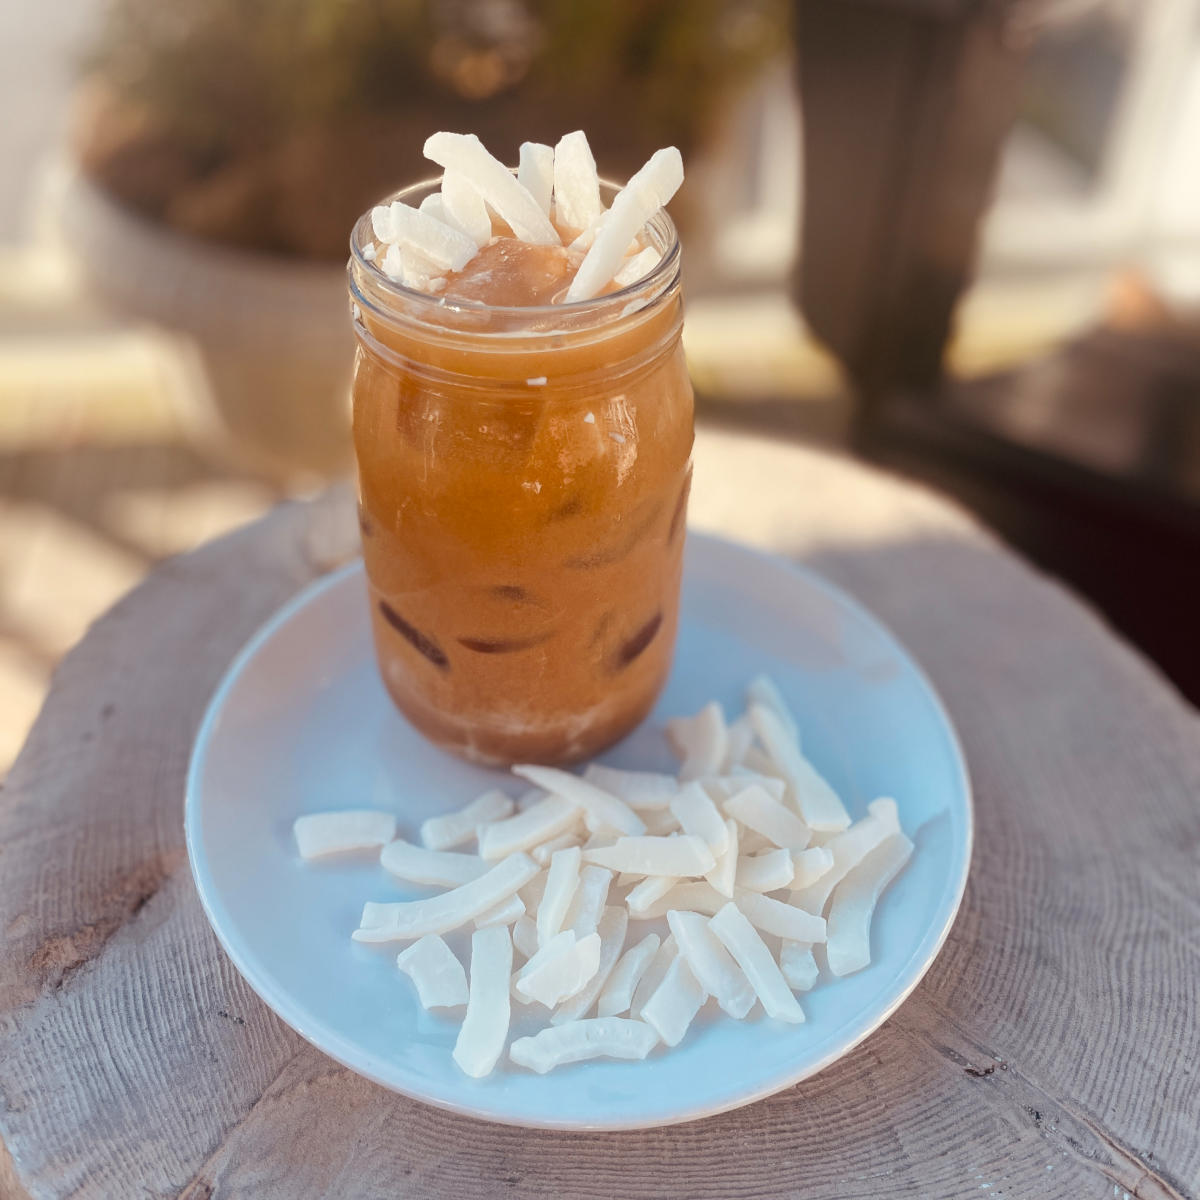 Beehive Café Burrough's Coconut Buzz